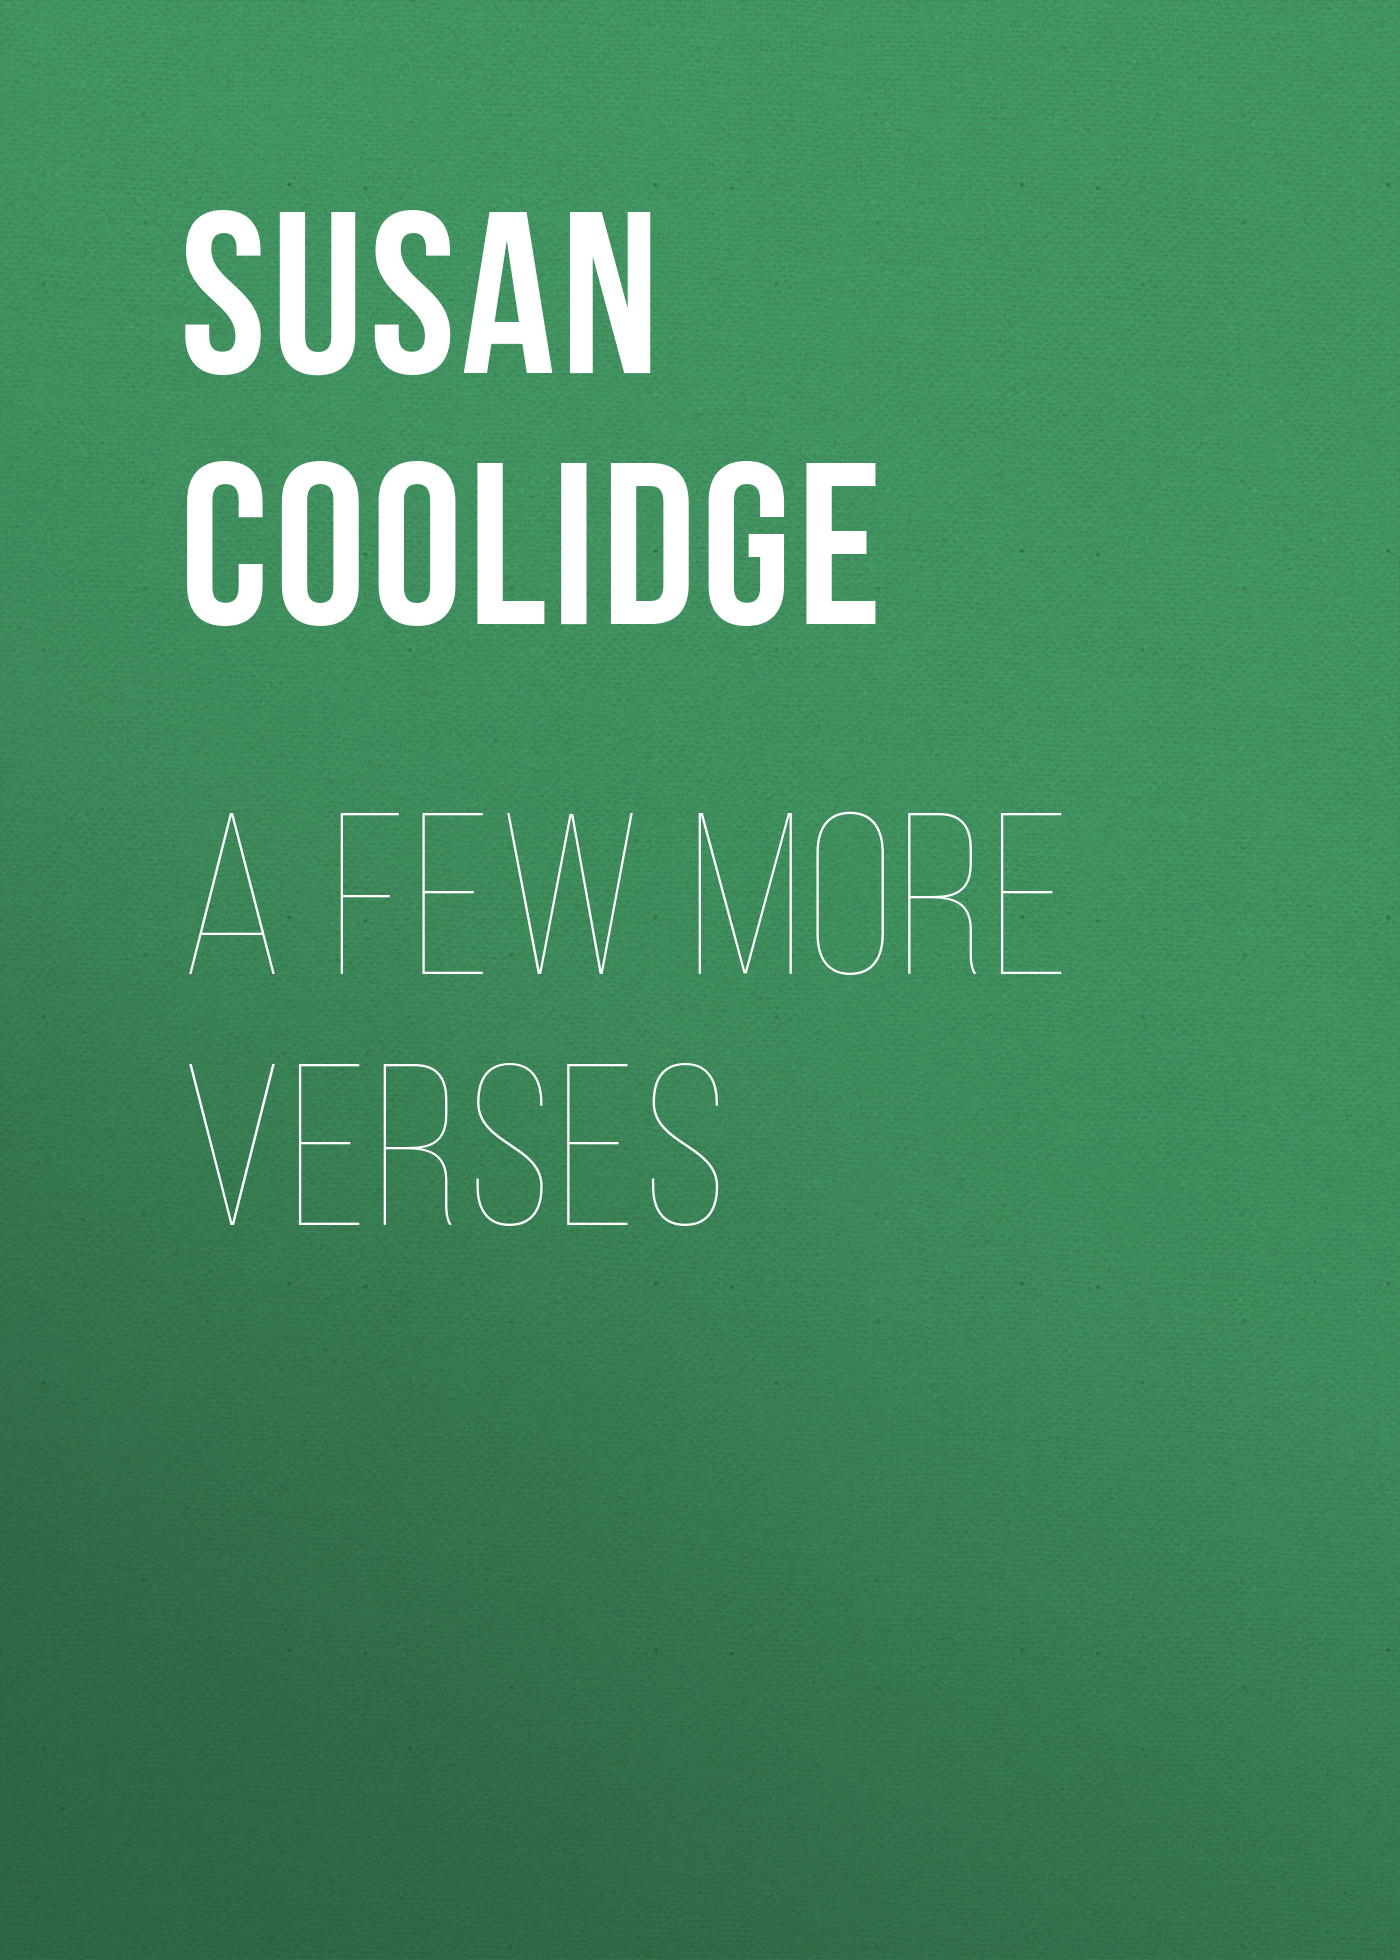 Книга A Few More Verses из серии , созданная Susan Coolidge, может относится к жанру Зарубежная классика. Стоимость электронной книги A Few More Verses с идентификатором 23154539 составляет 5.99 руб.